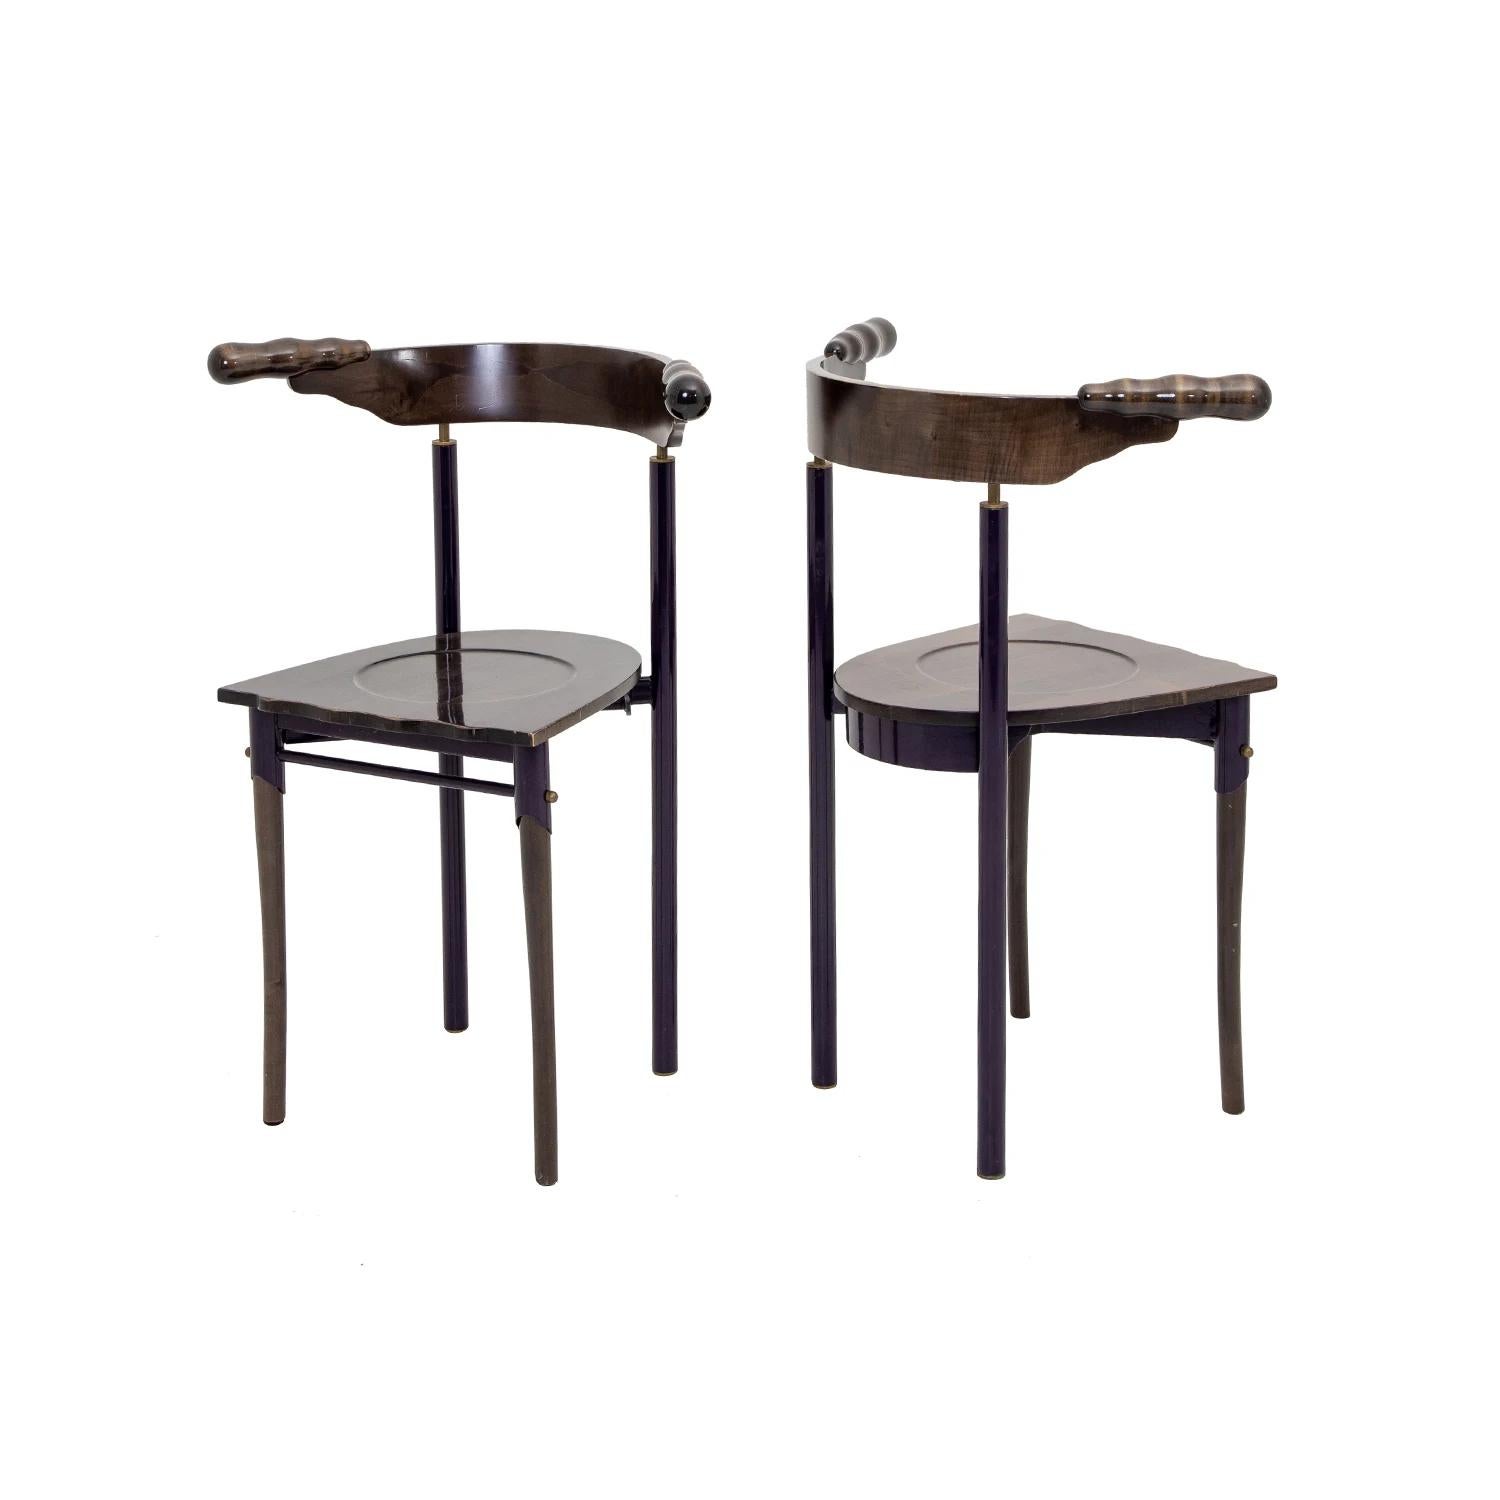 Paire de chaises d'appoint Jansky en noyer artisanal, conçues par Borek Sipek et produites par Driade, en bon état. Les chaises d'extrémité sculpturales ont un dossier arrondi et reposent sur quatre pieds droits en bois. Usures dues à l'âge et à